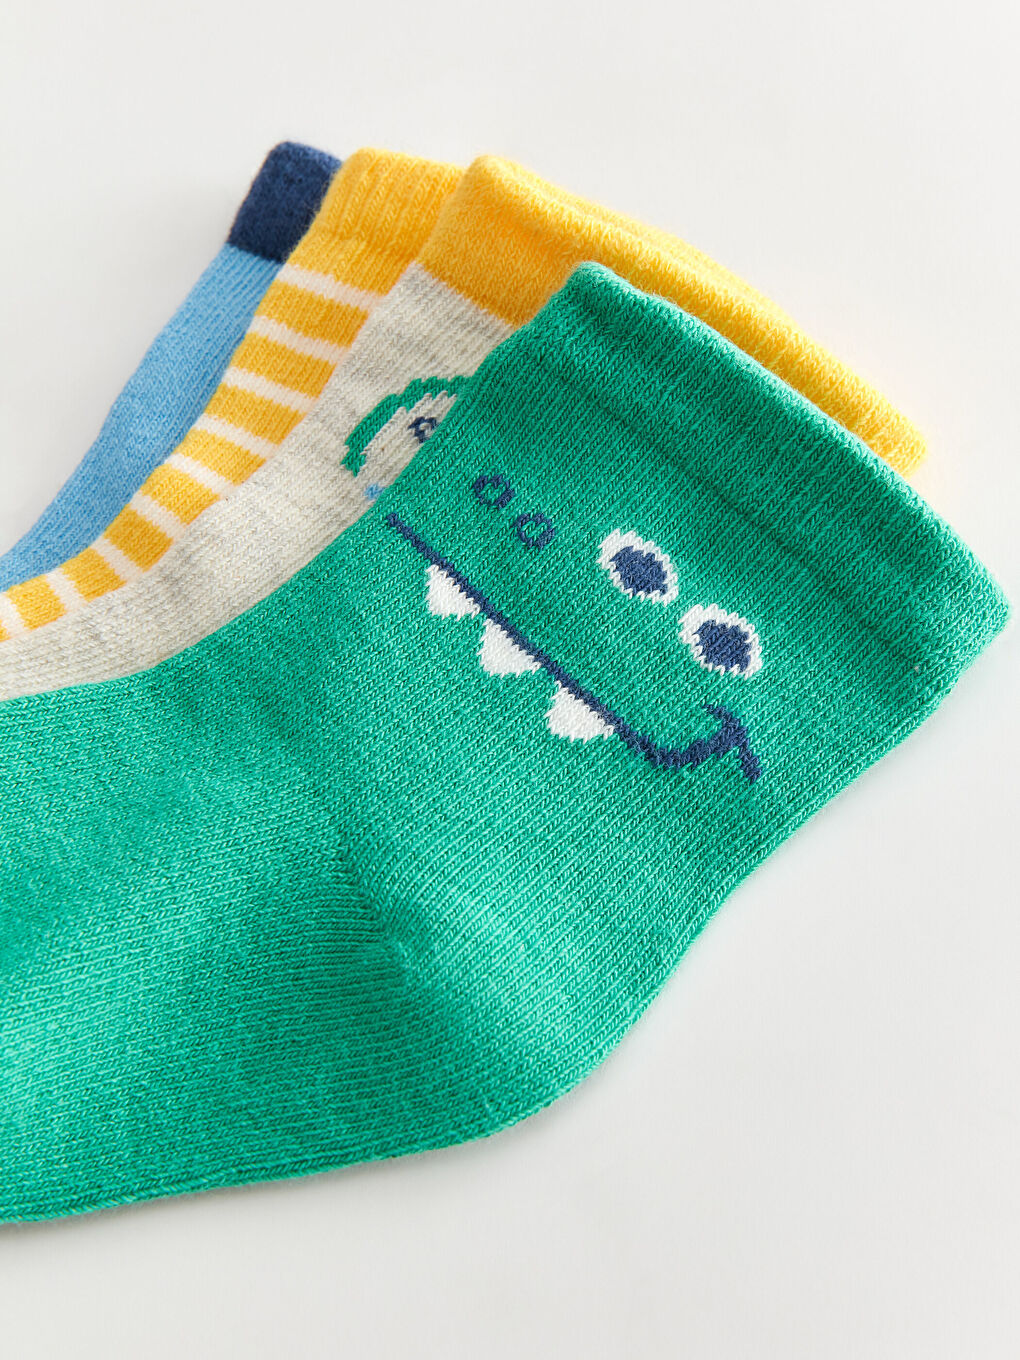 Printed Baby Boy Socks Set Of 4